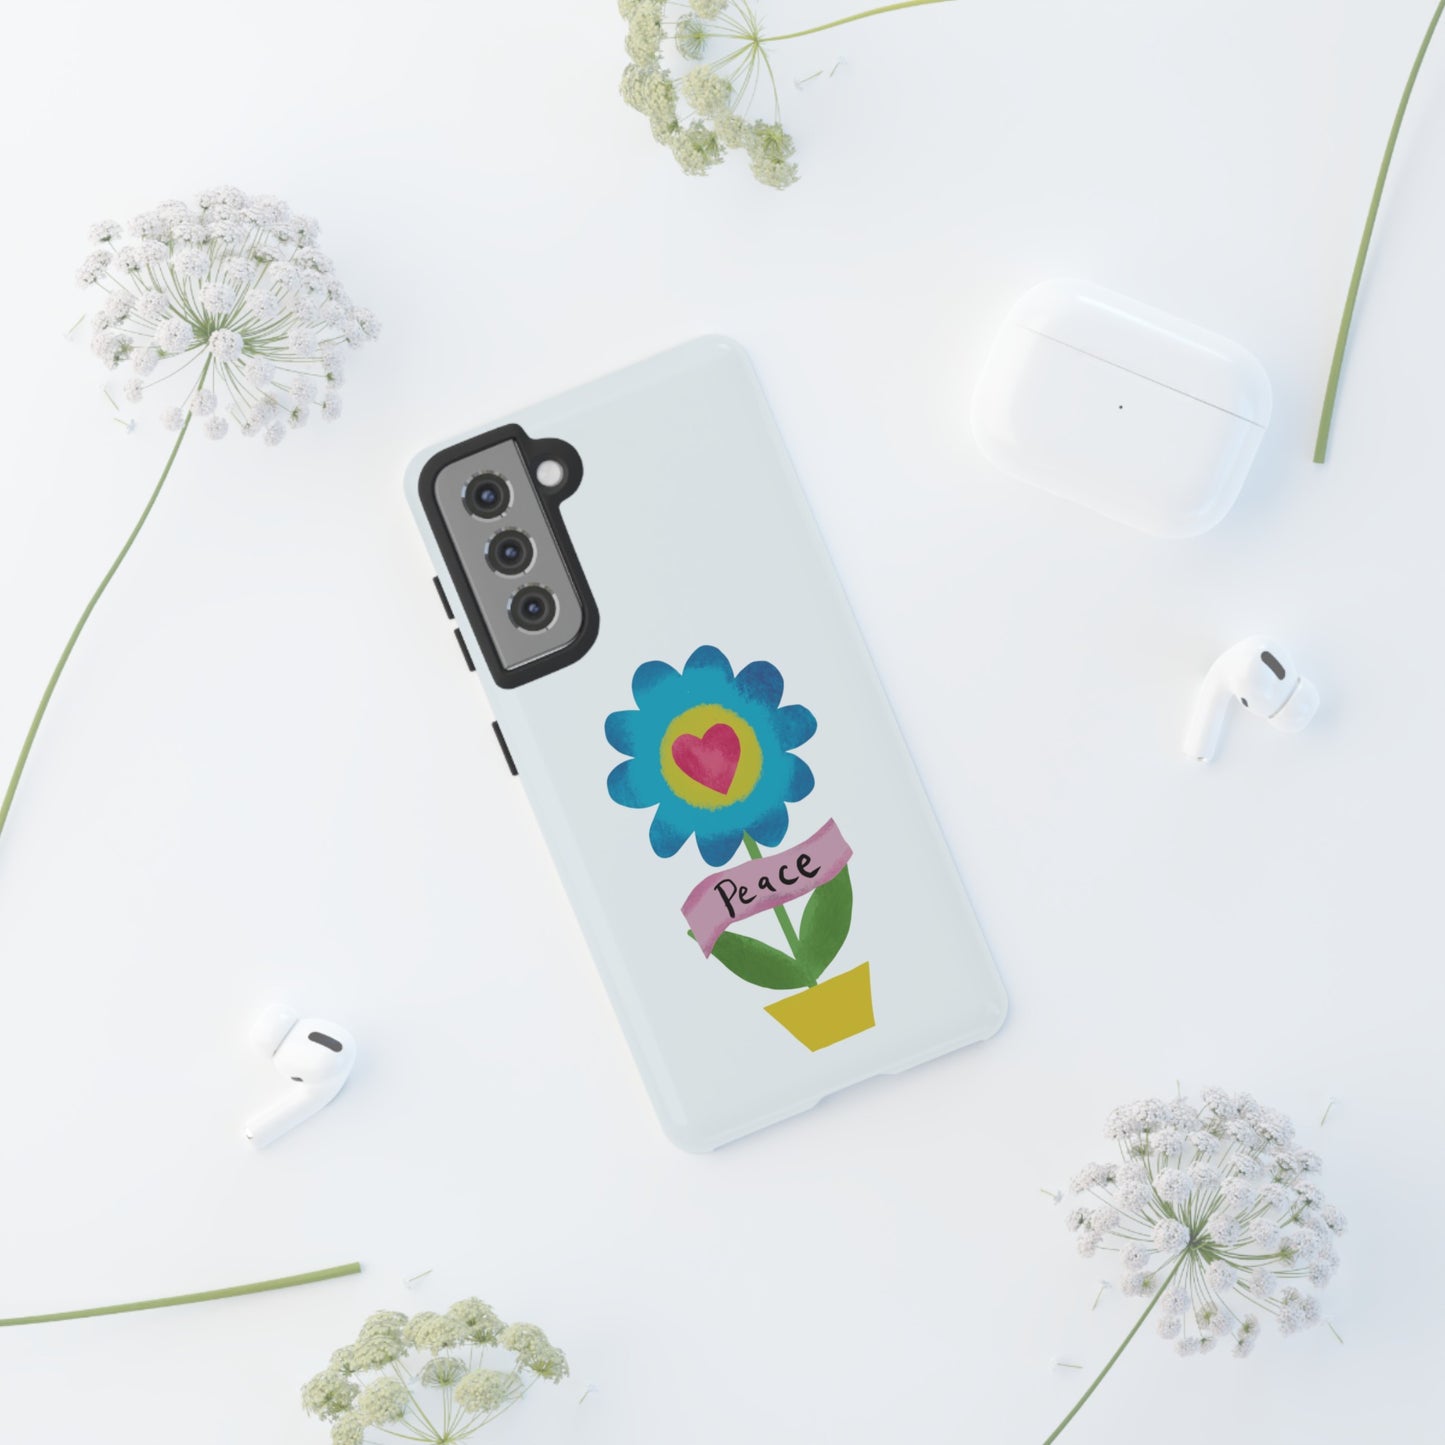 Peace Flower | Tough Phone Case